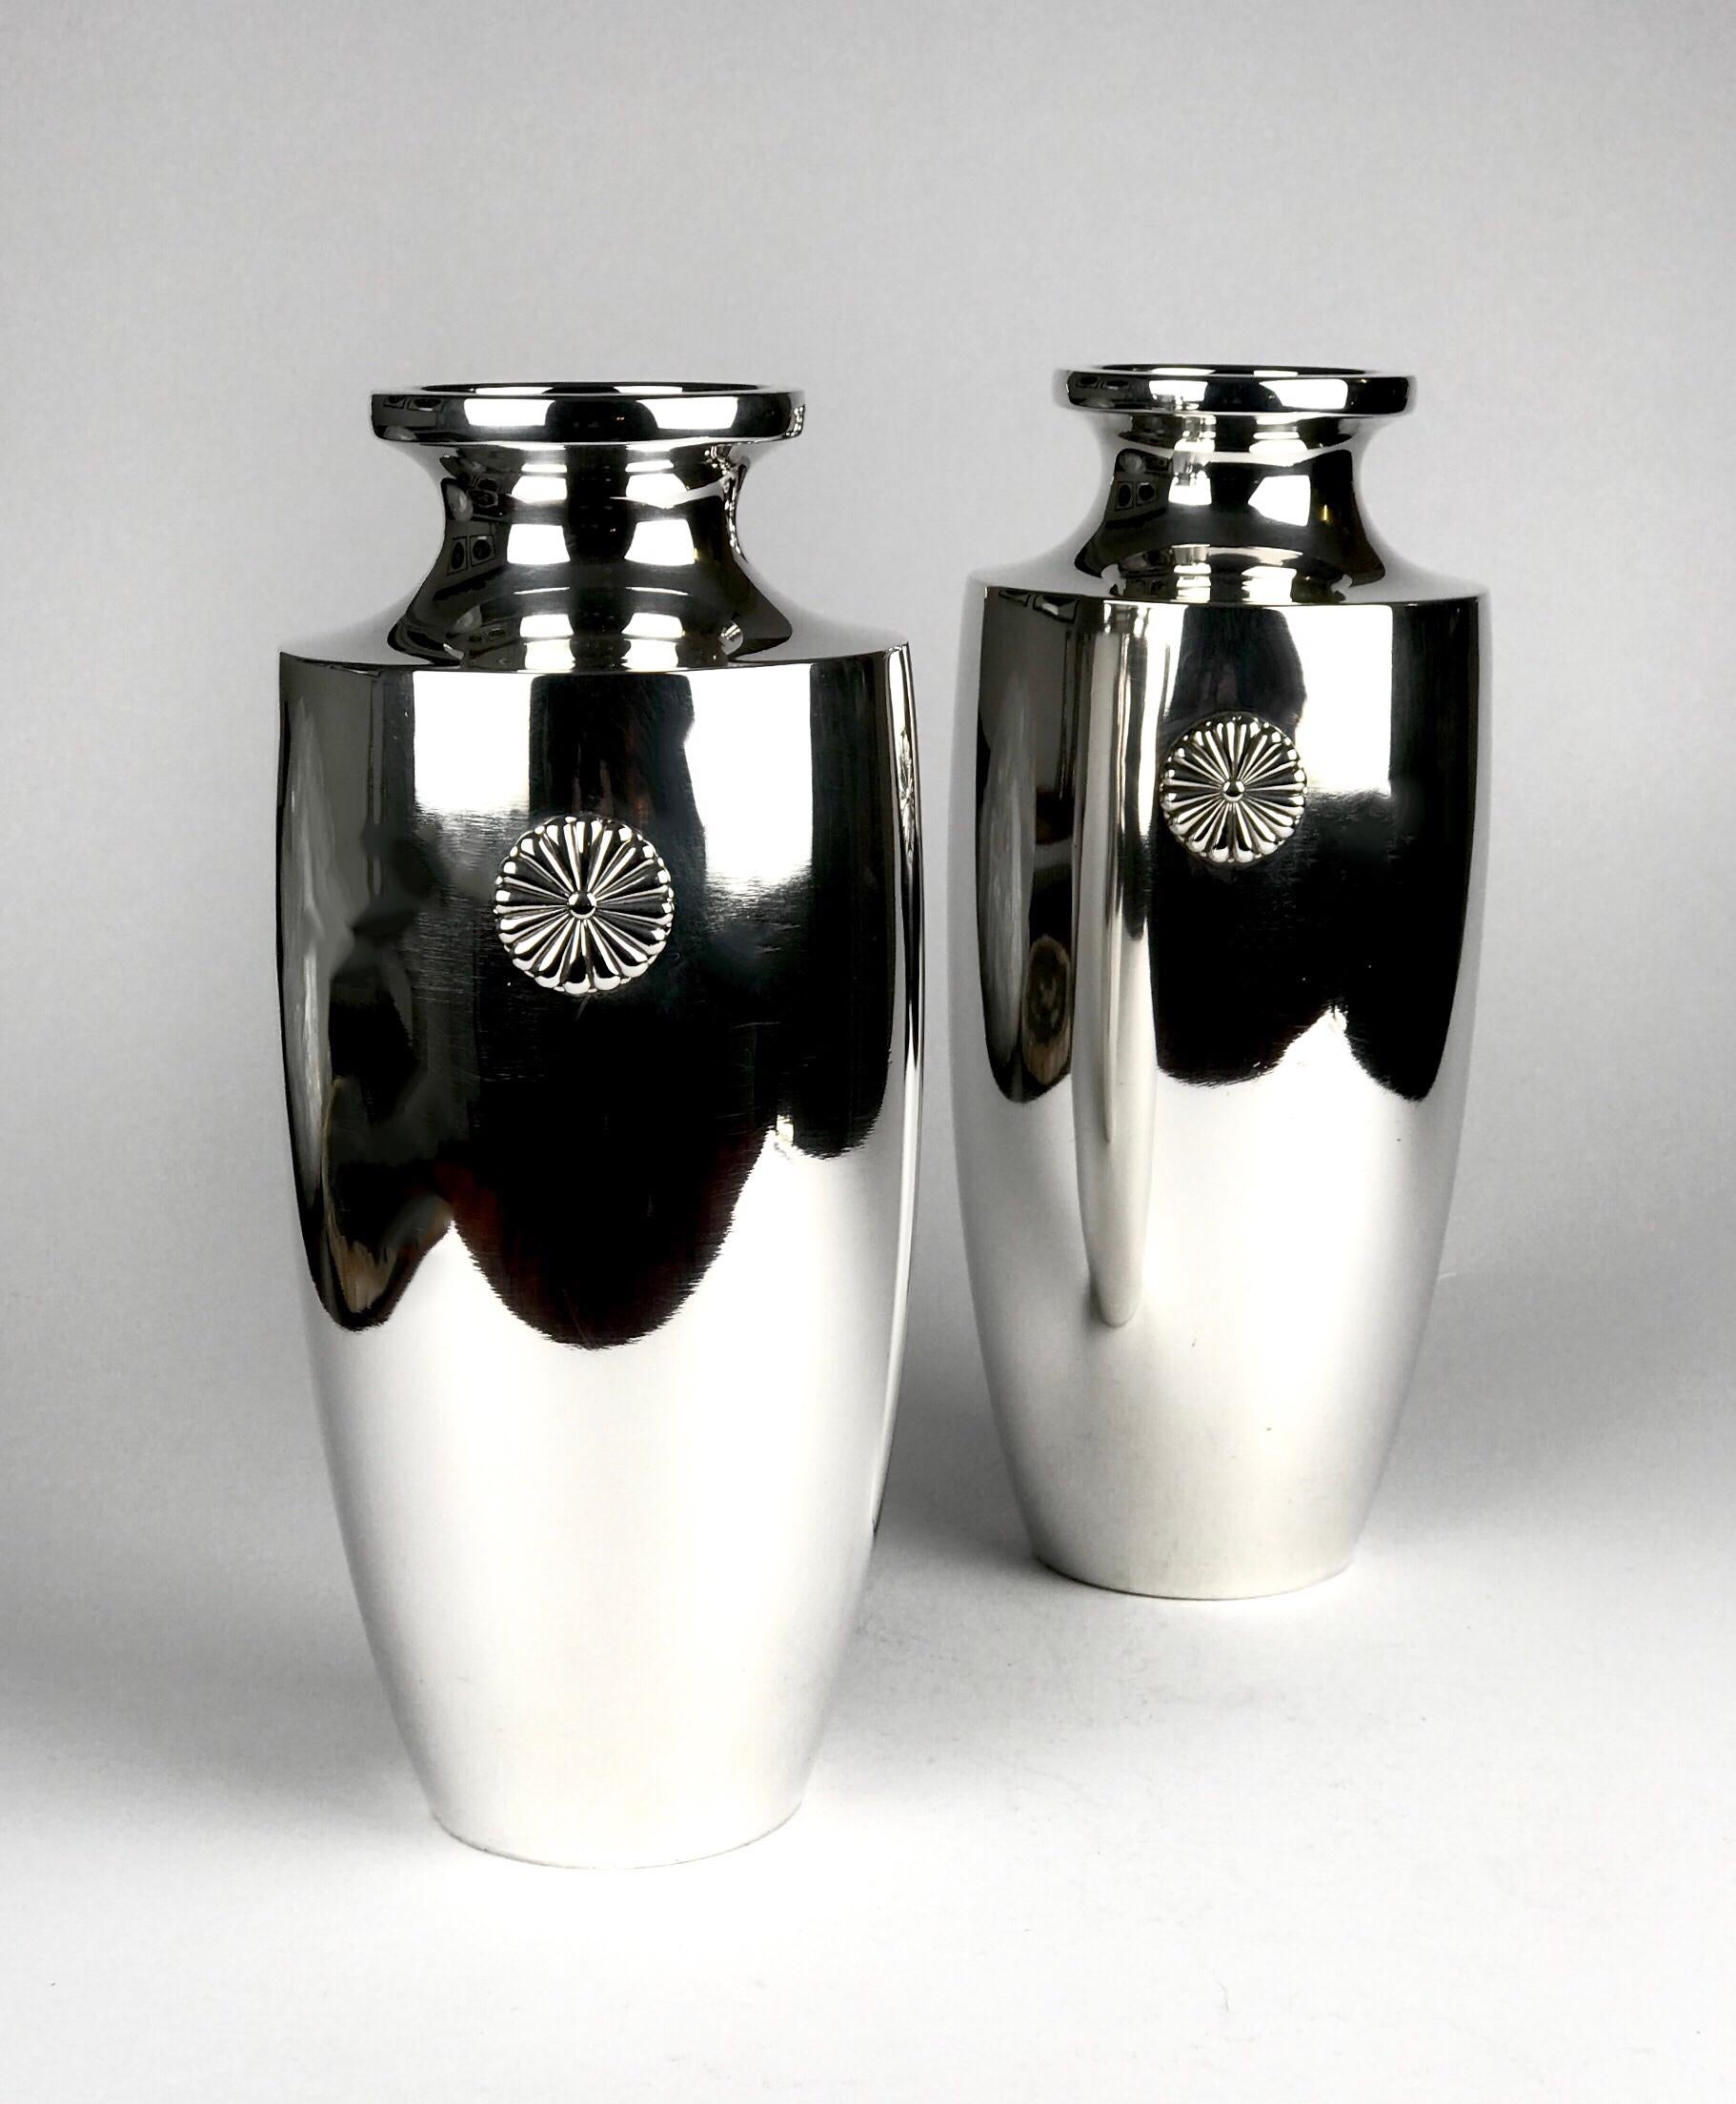 Une paire rare et magnifique de vases impériaux japonais de la période Meiji en argent pur. Cette paire de vases impériaux est en argent pur et est marquée à la base du poinçon de Jung.
L'unique fleur de chrysanthème à 18 pétales est la marque de